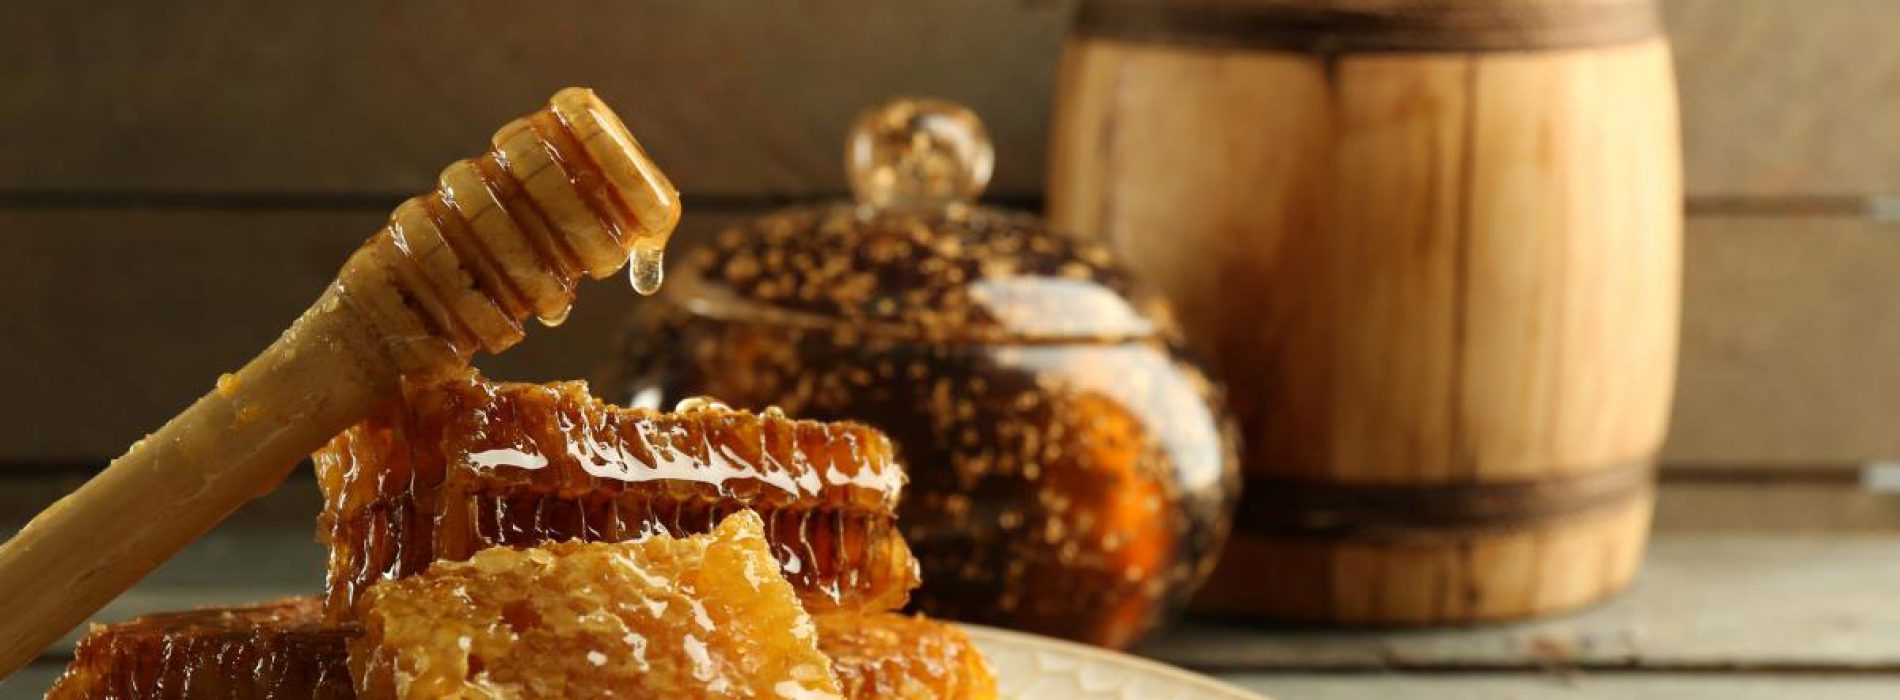 Saoedische honing blijkt een krachtig antibacterieel middel te zijn tegen resistente bacteriën